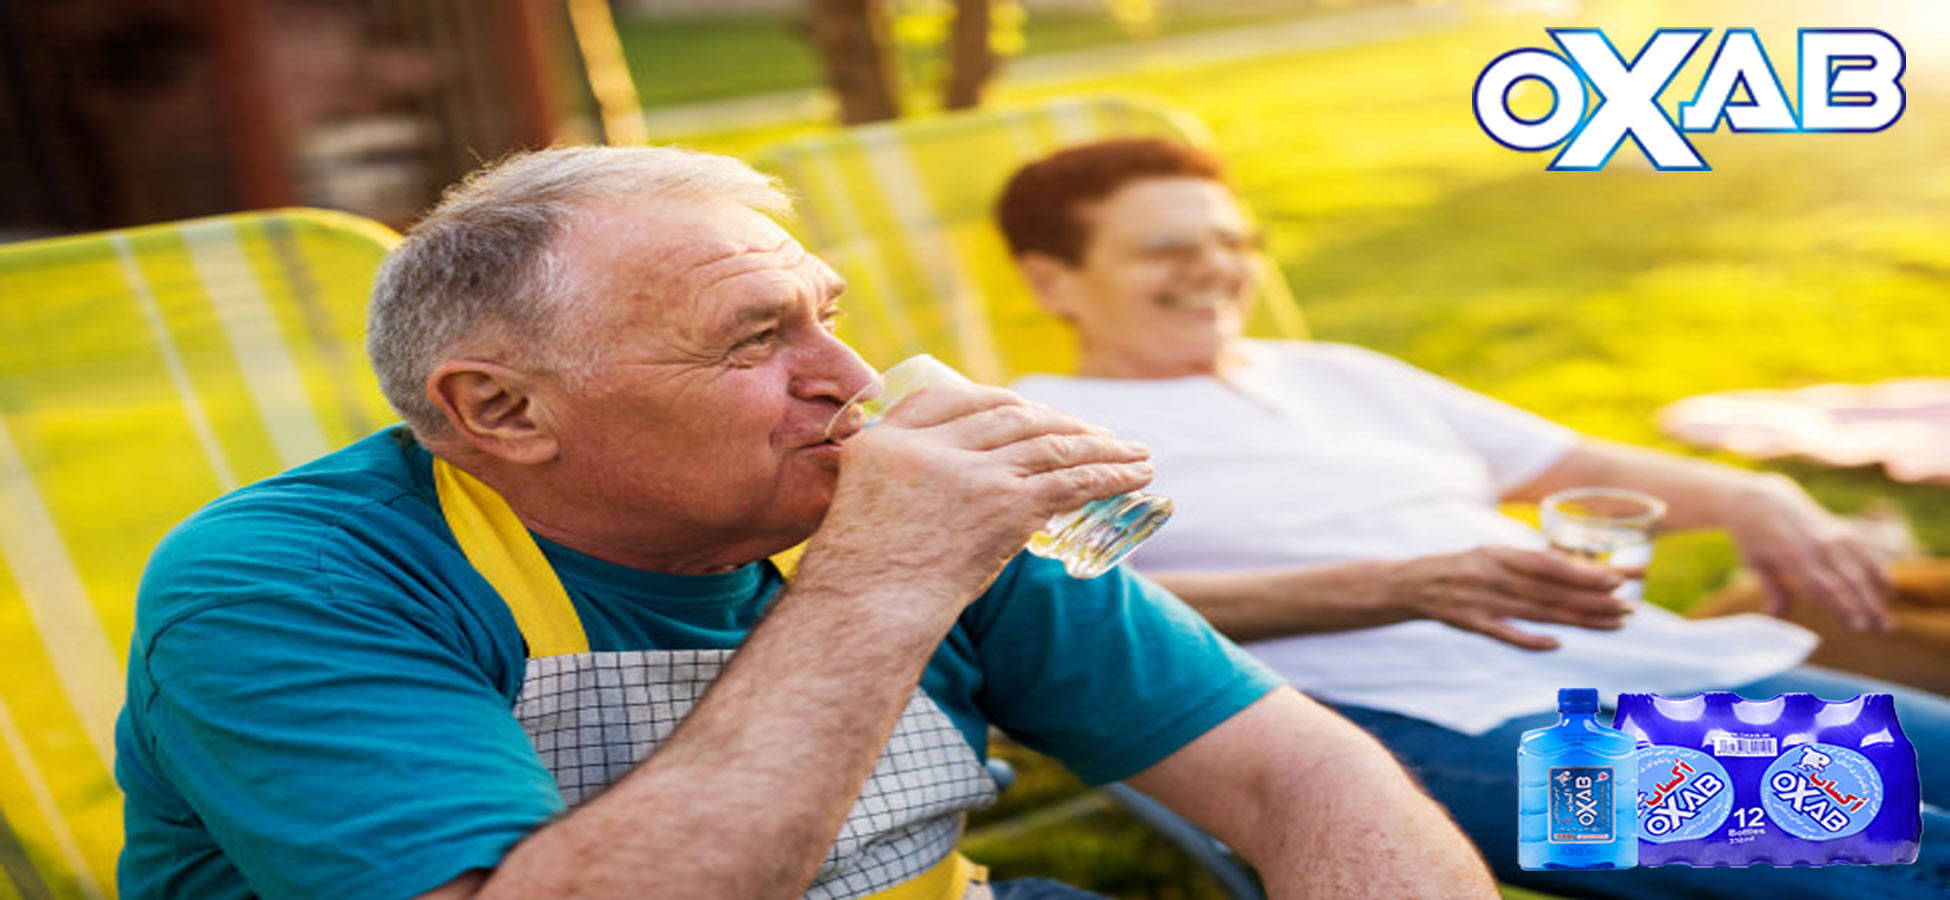 مزایای نوشیدن آب غنی شده با اکسیژن برای سالمندان